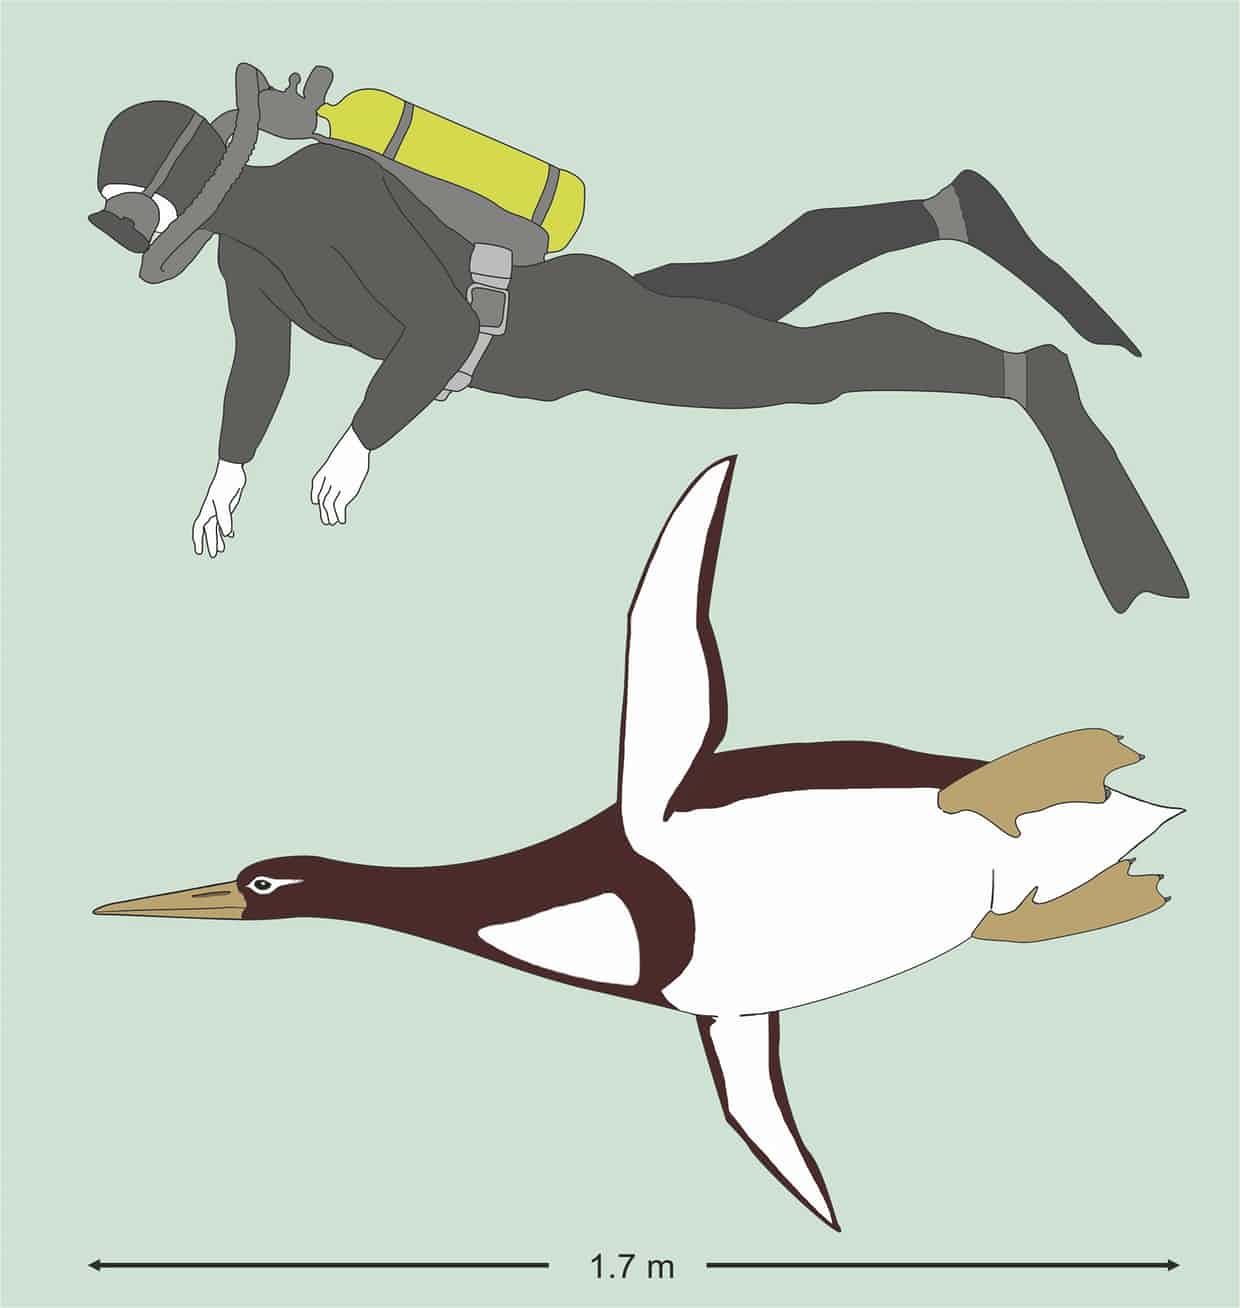 giant penguin new zealand, fossil giant penguin new zealand, giant penguin antarctica, new species giant penguin new zealand